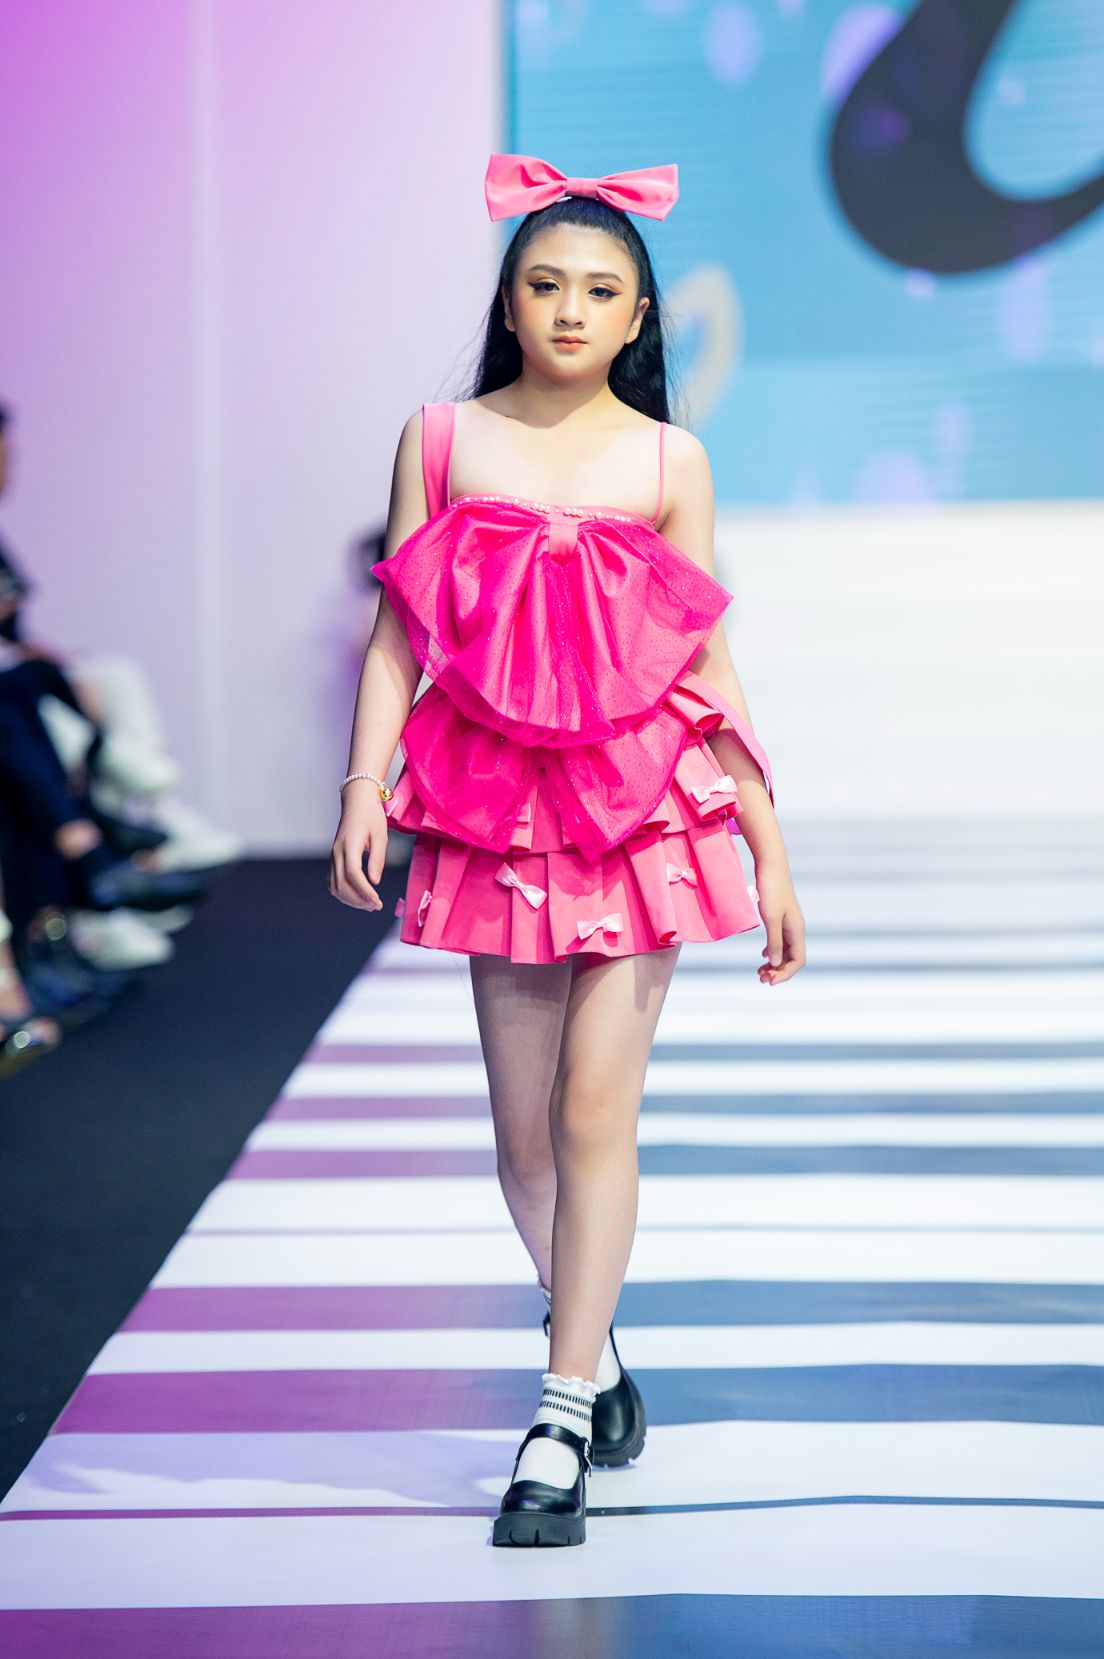 Diem Quynh NTK Ha Kieu Oanh Gần 150 mẫu thiết kế được trình diễn tại Đêm hội mẫu nhí 2022   Fashion Melody